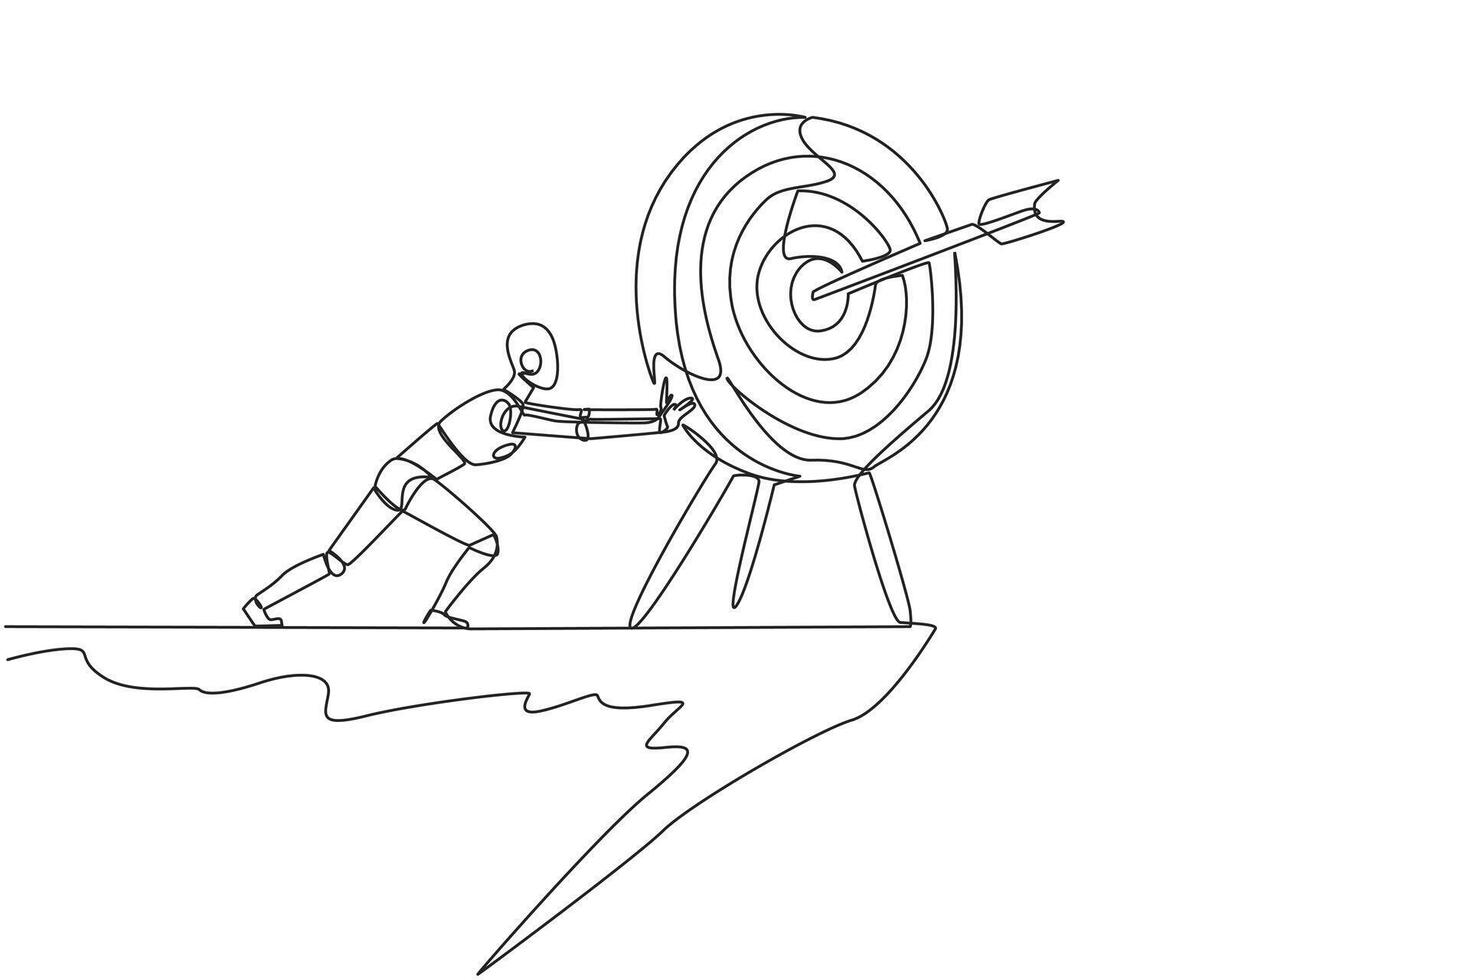 single een lijn tekening robot duwt de groot pijl bord doelwit van de rand van klif. doelloos. Nee focus. robot kunstmatig intelligentie. toekomst techniek. doorlopend lijn ontwerp grafisch illustratie vector